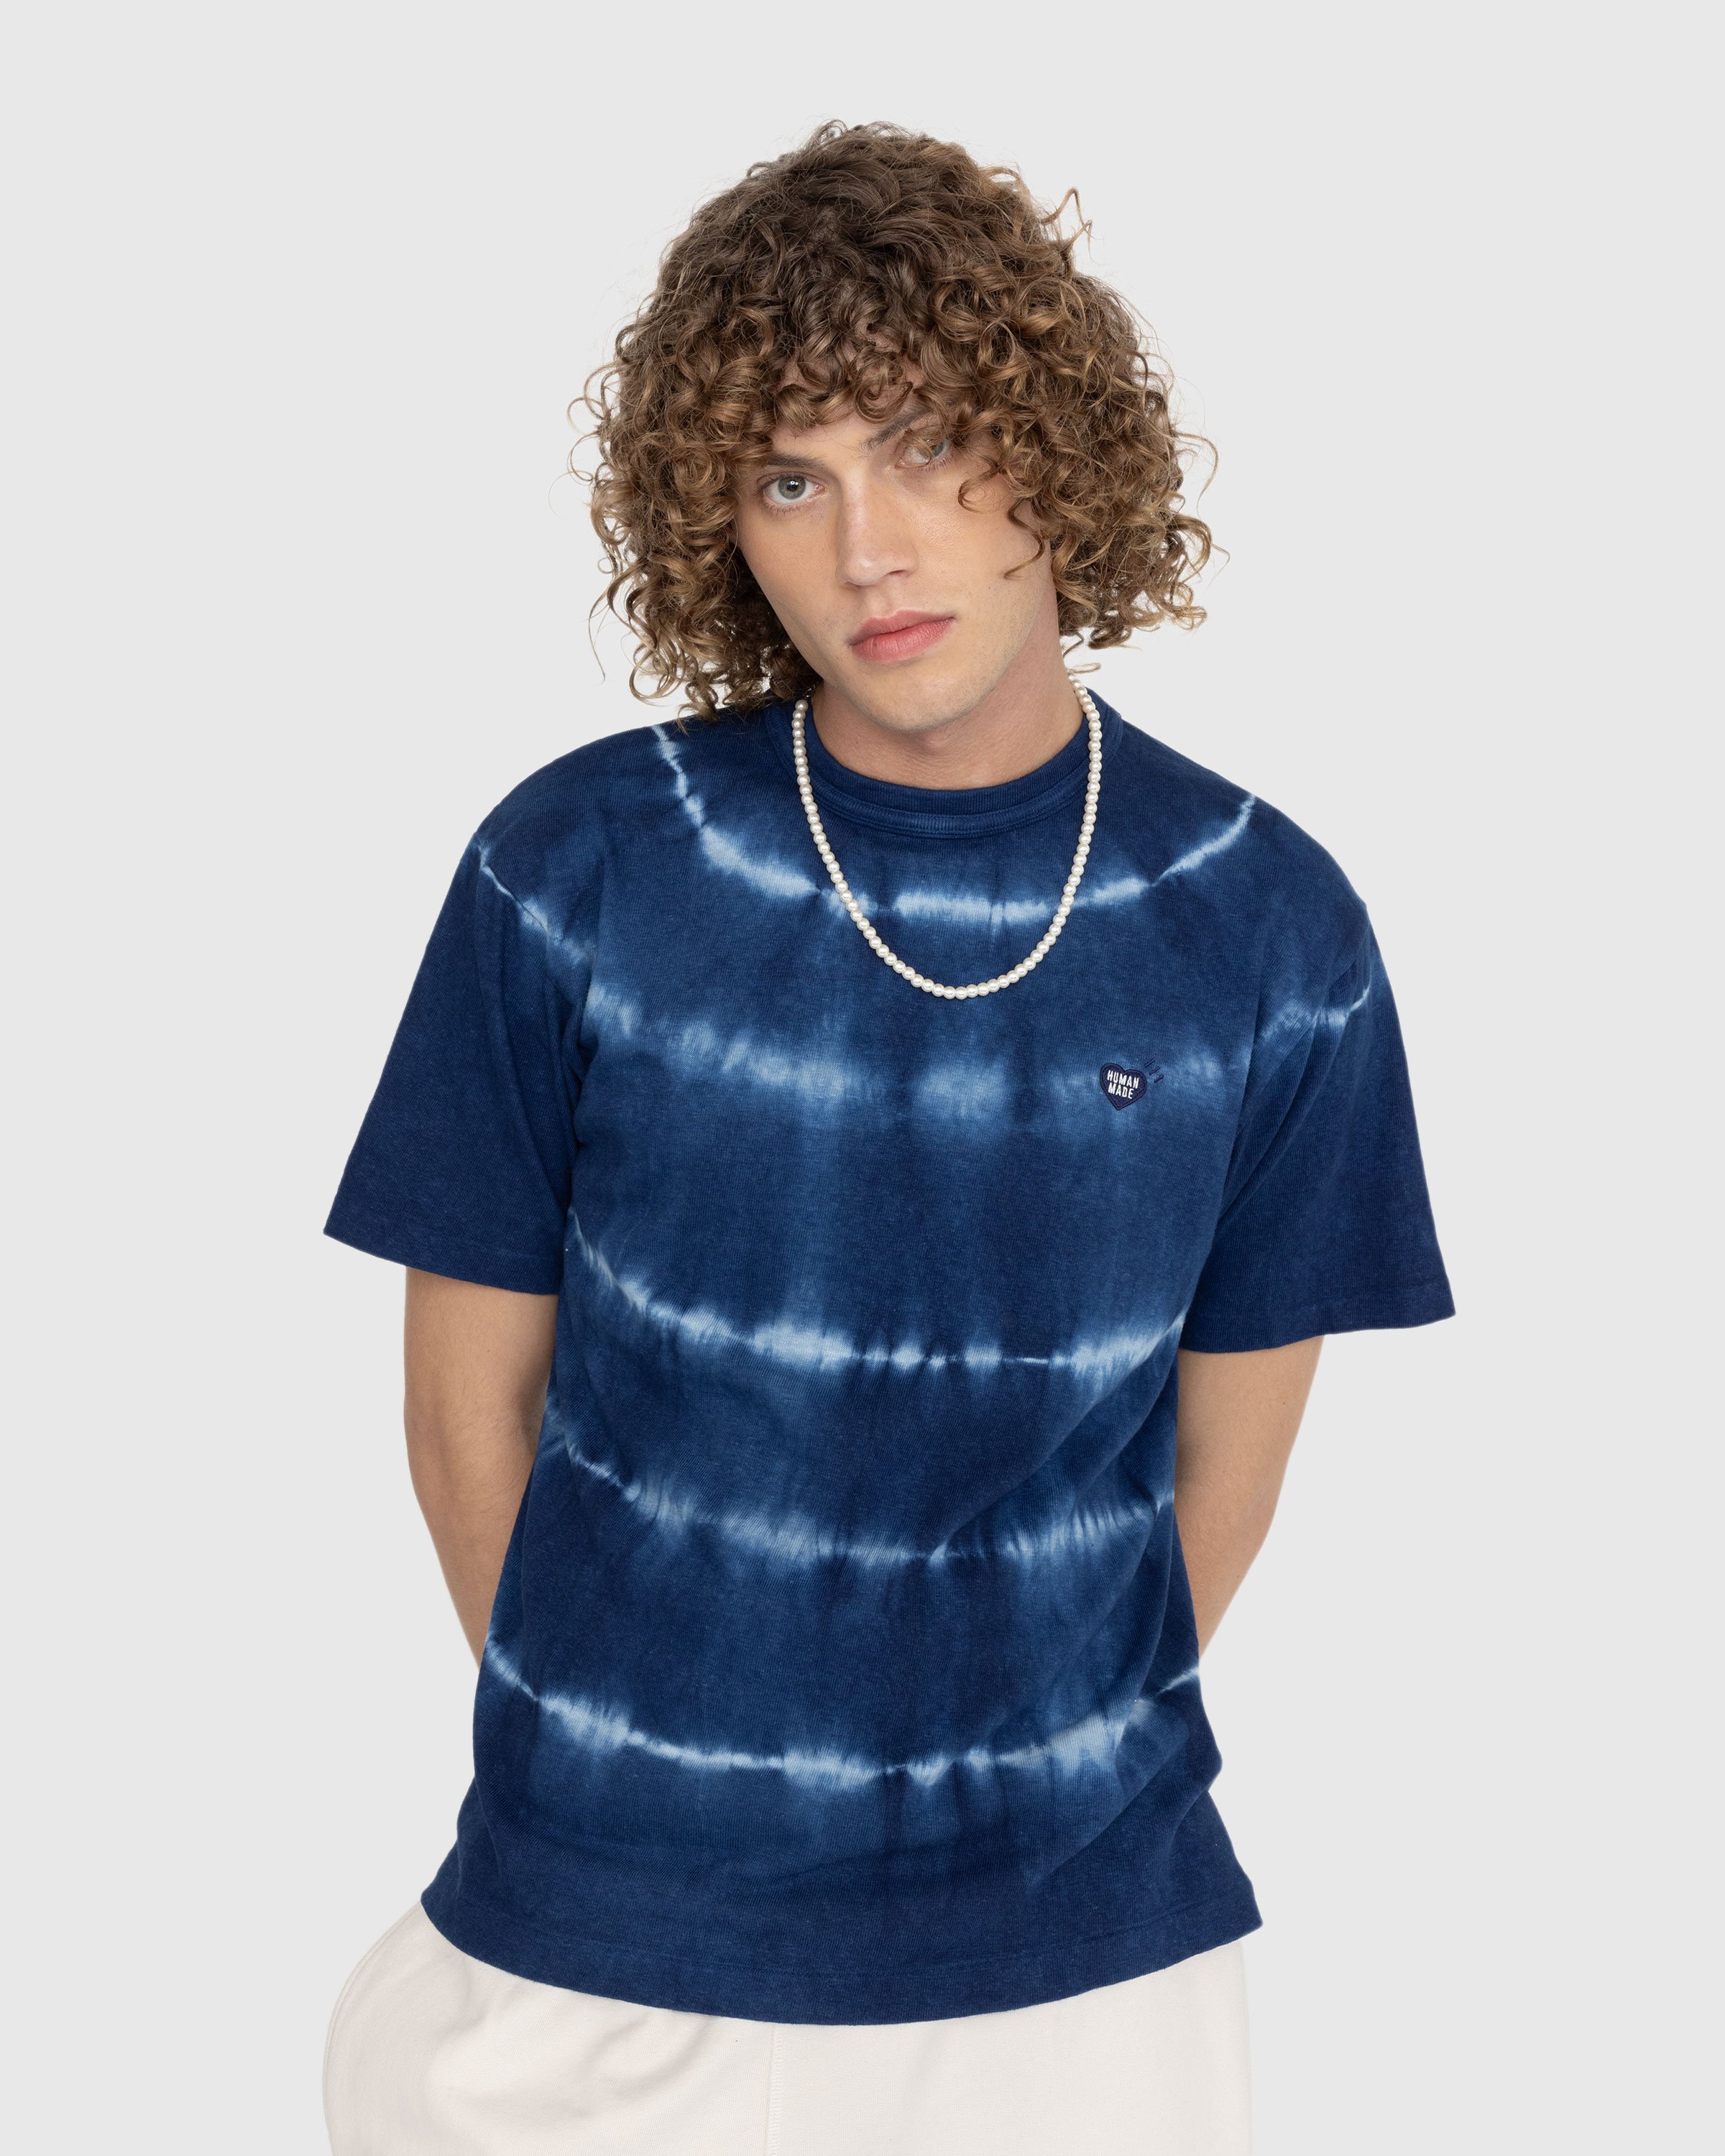 Human Made - Ningen-sei Indigo Dyed T-Shirt #1 Blue - Clothing - Blue - Image 2